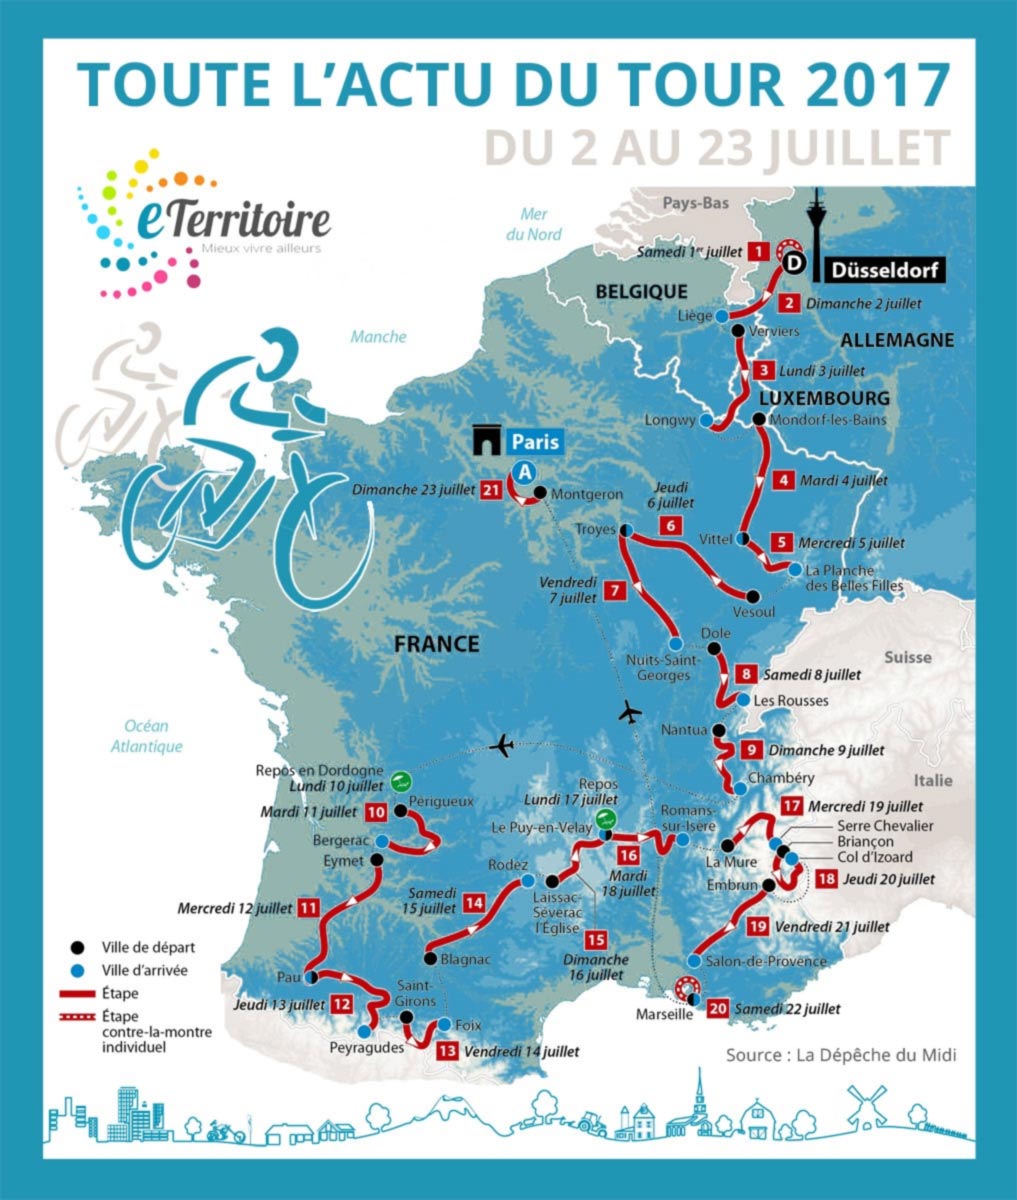 Tour de France 2017 - Verrières - Passage d'étape